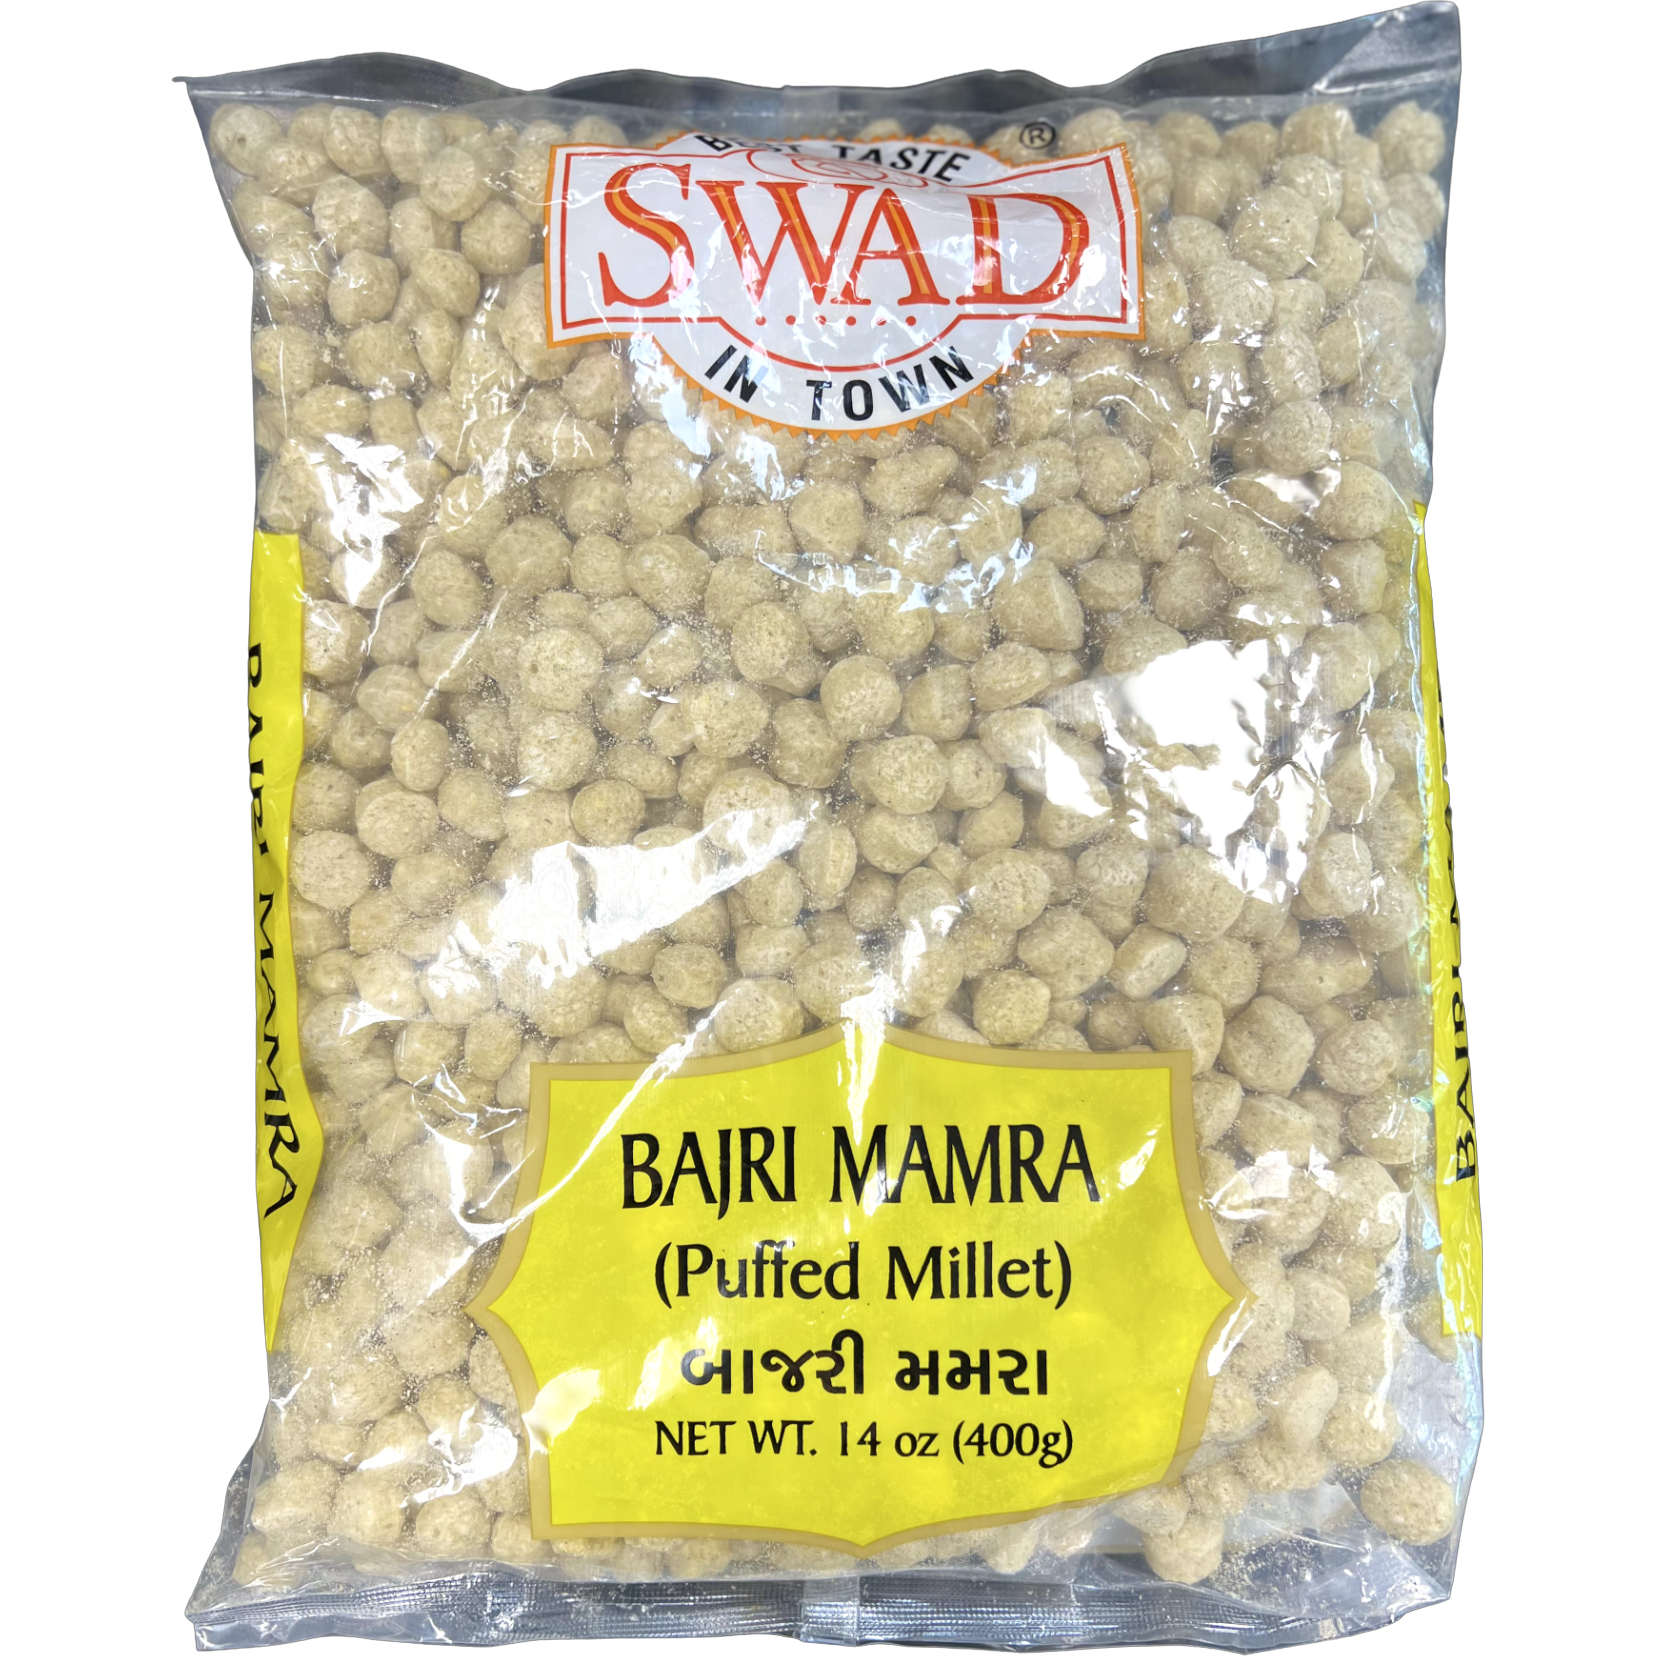 Swad Whole Bajri Mamra - 400 Gm (14 Oz)